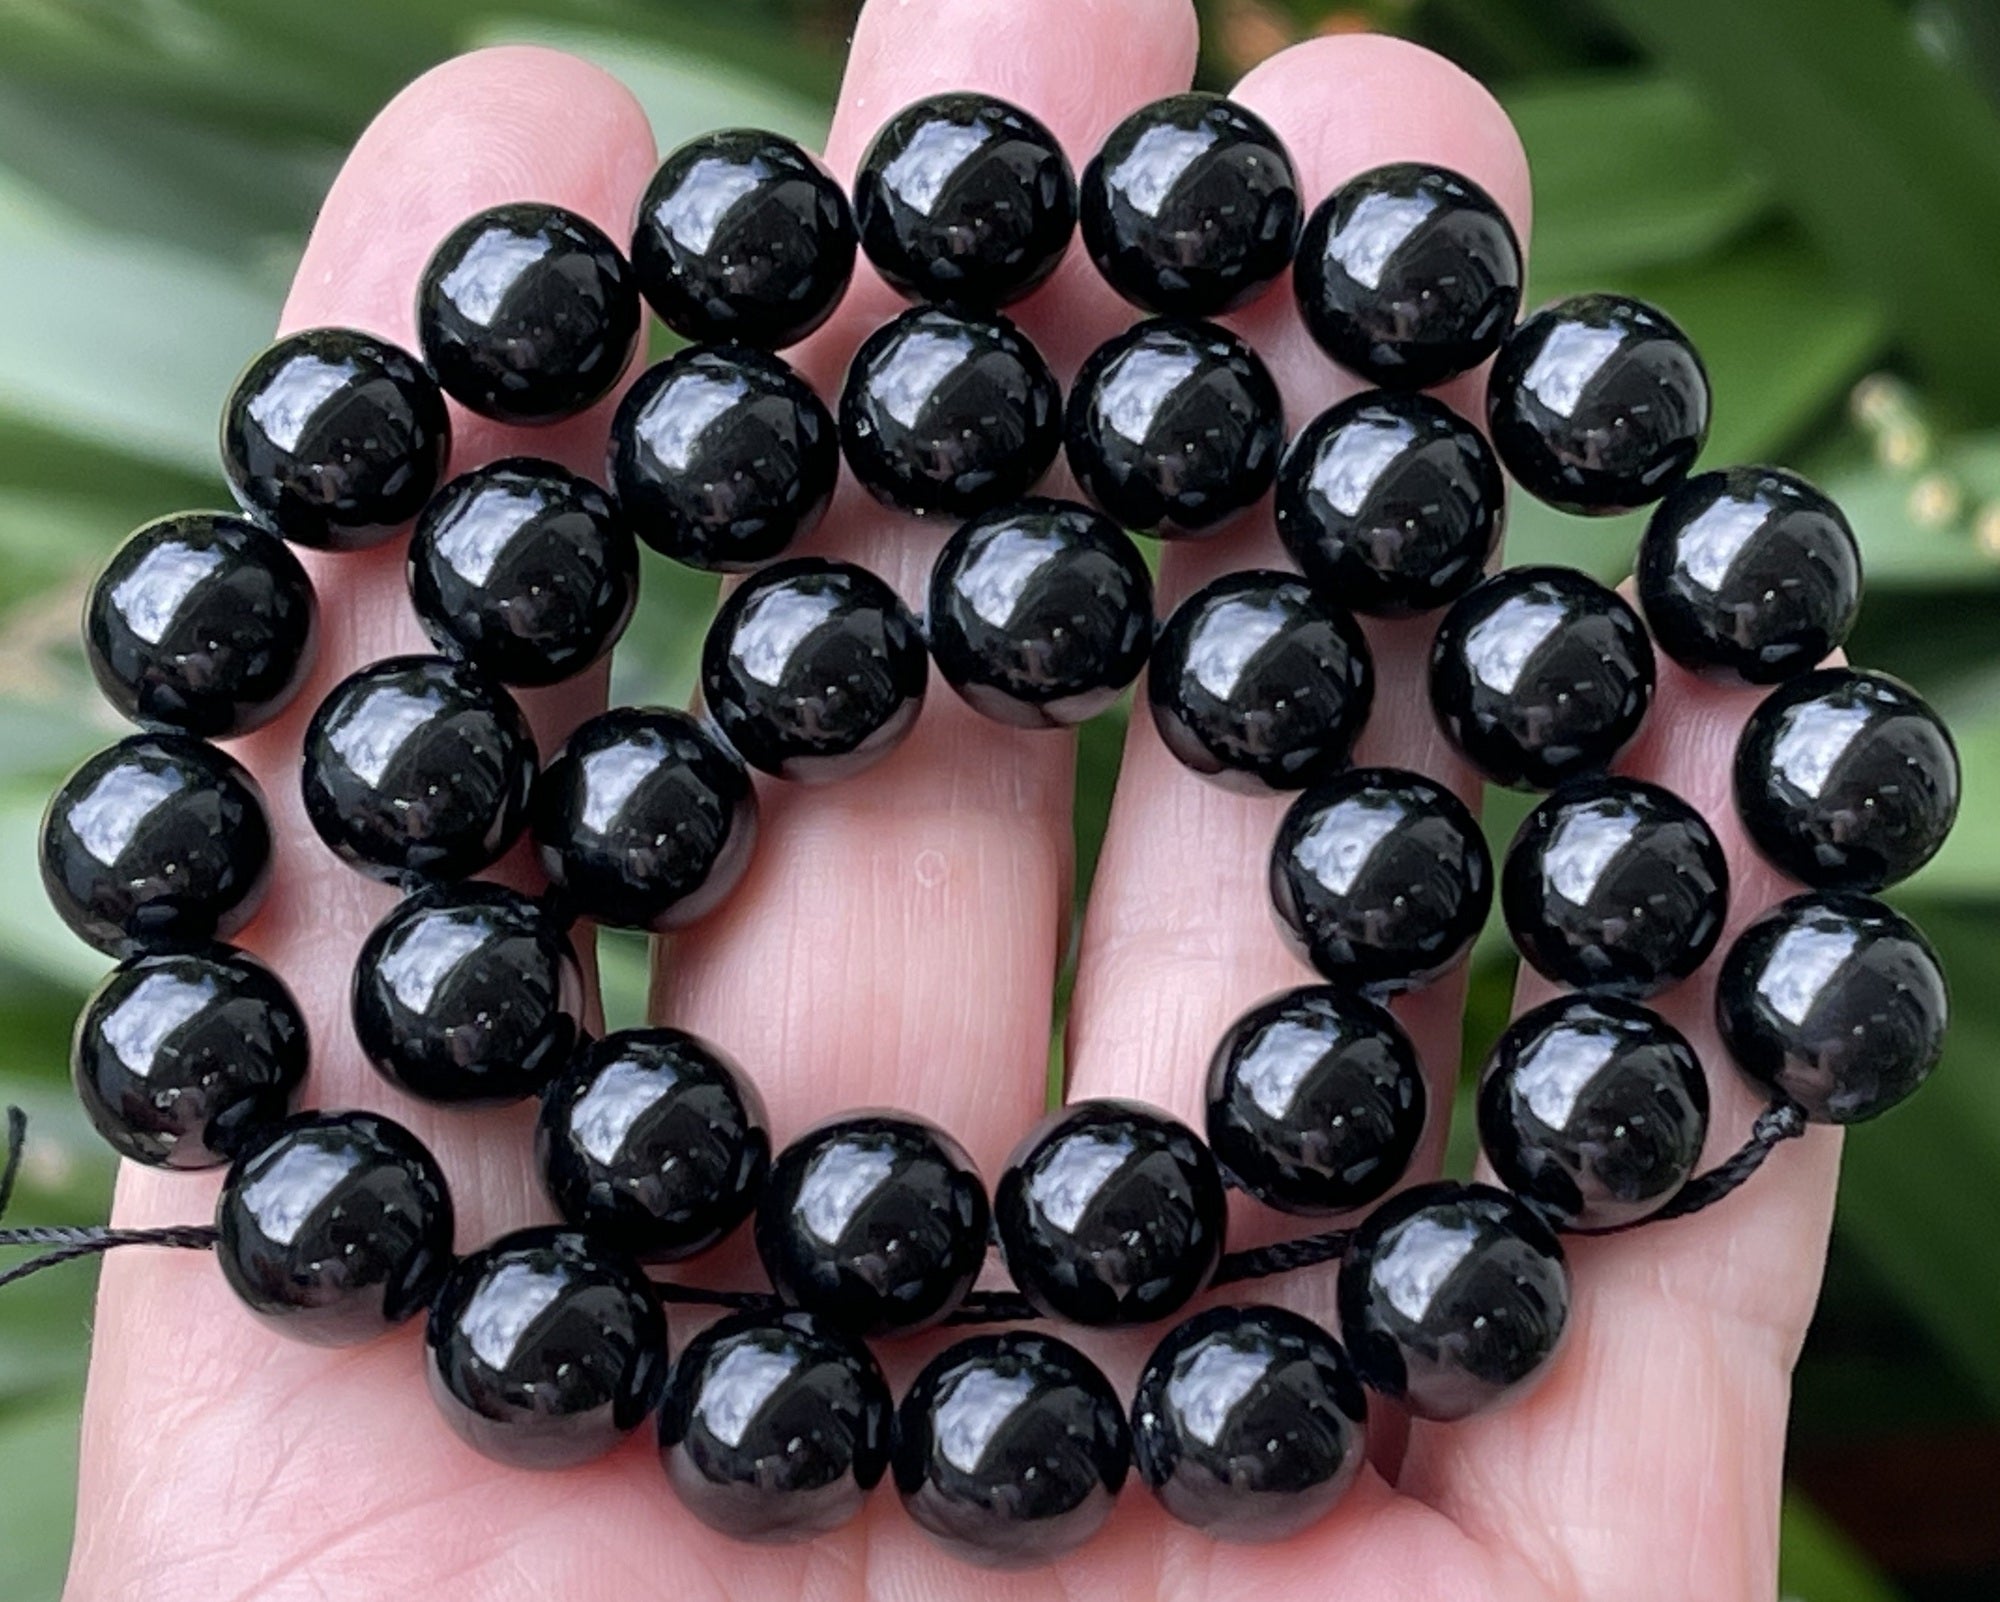 Black Tourmaline 10mm round natural gemstone beads 15" strand - Oz Beads 